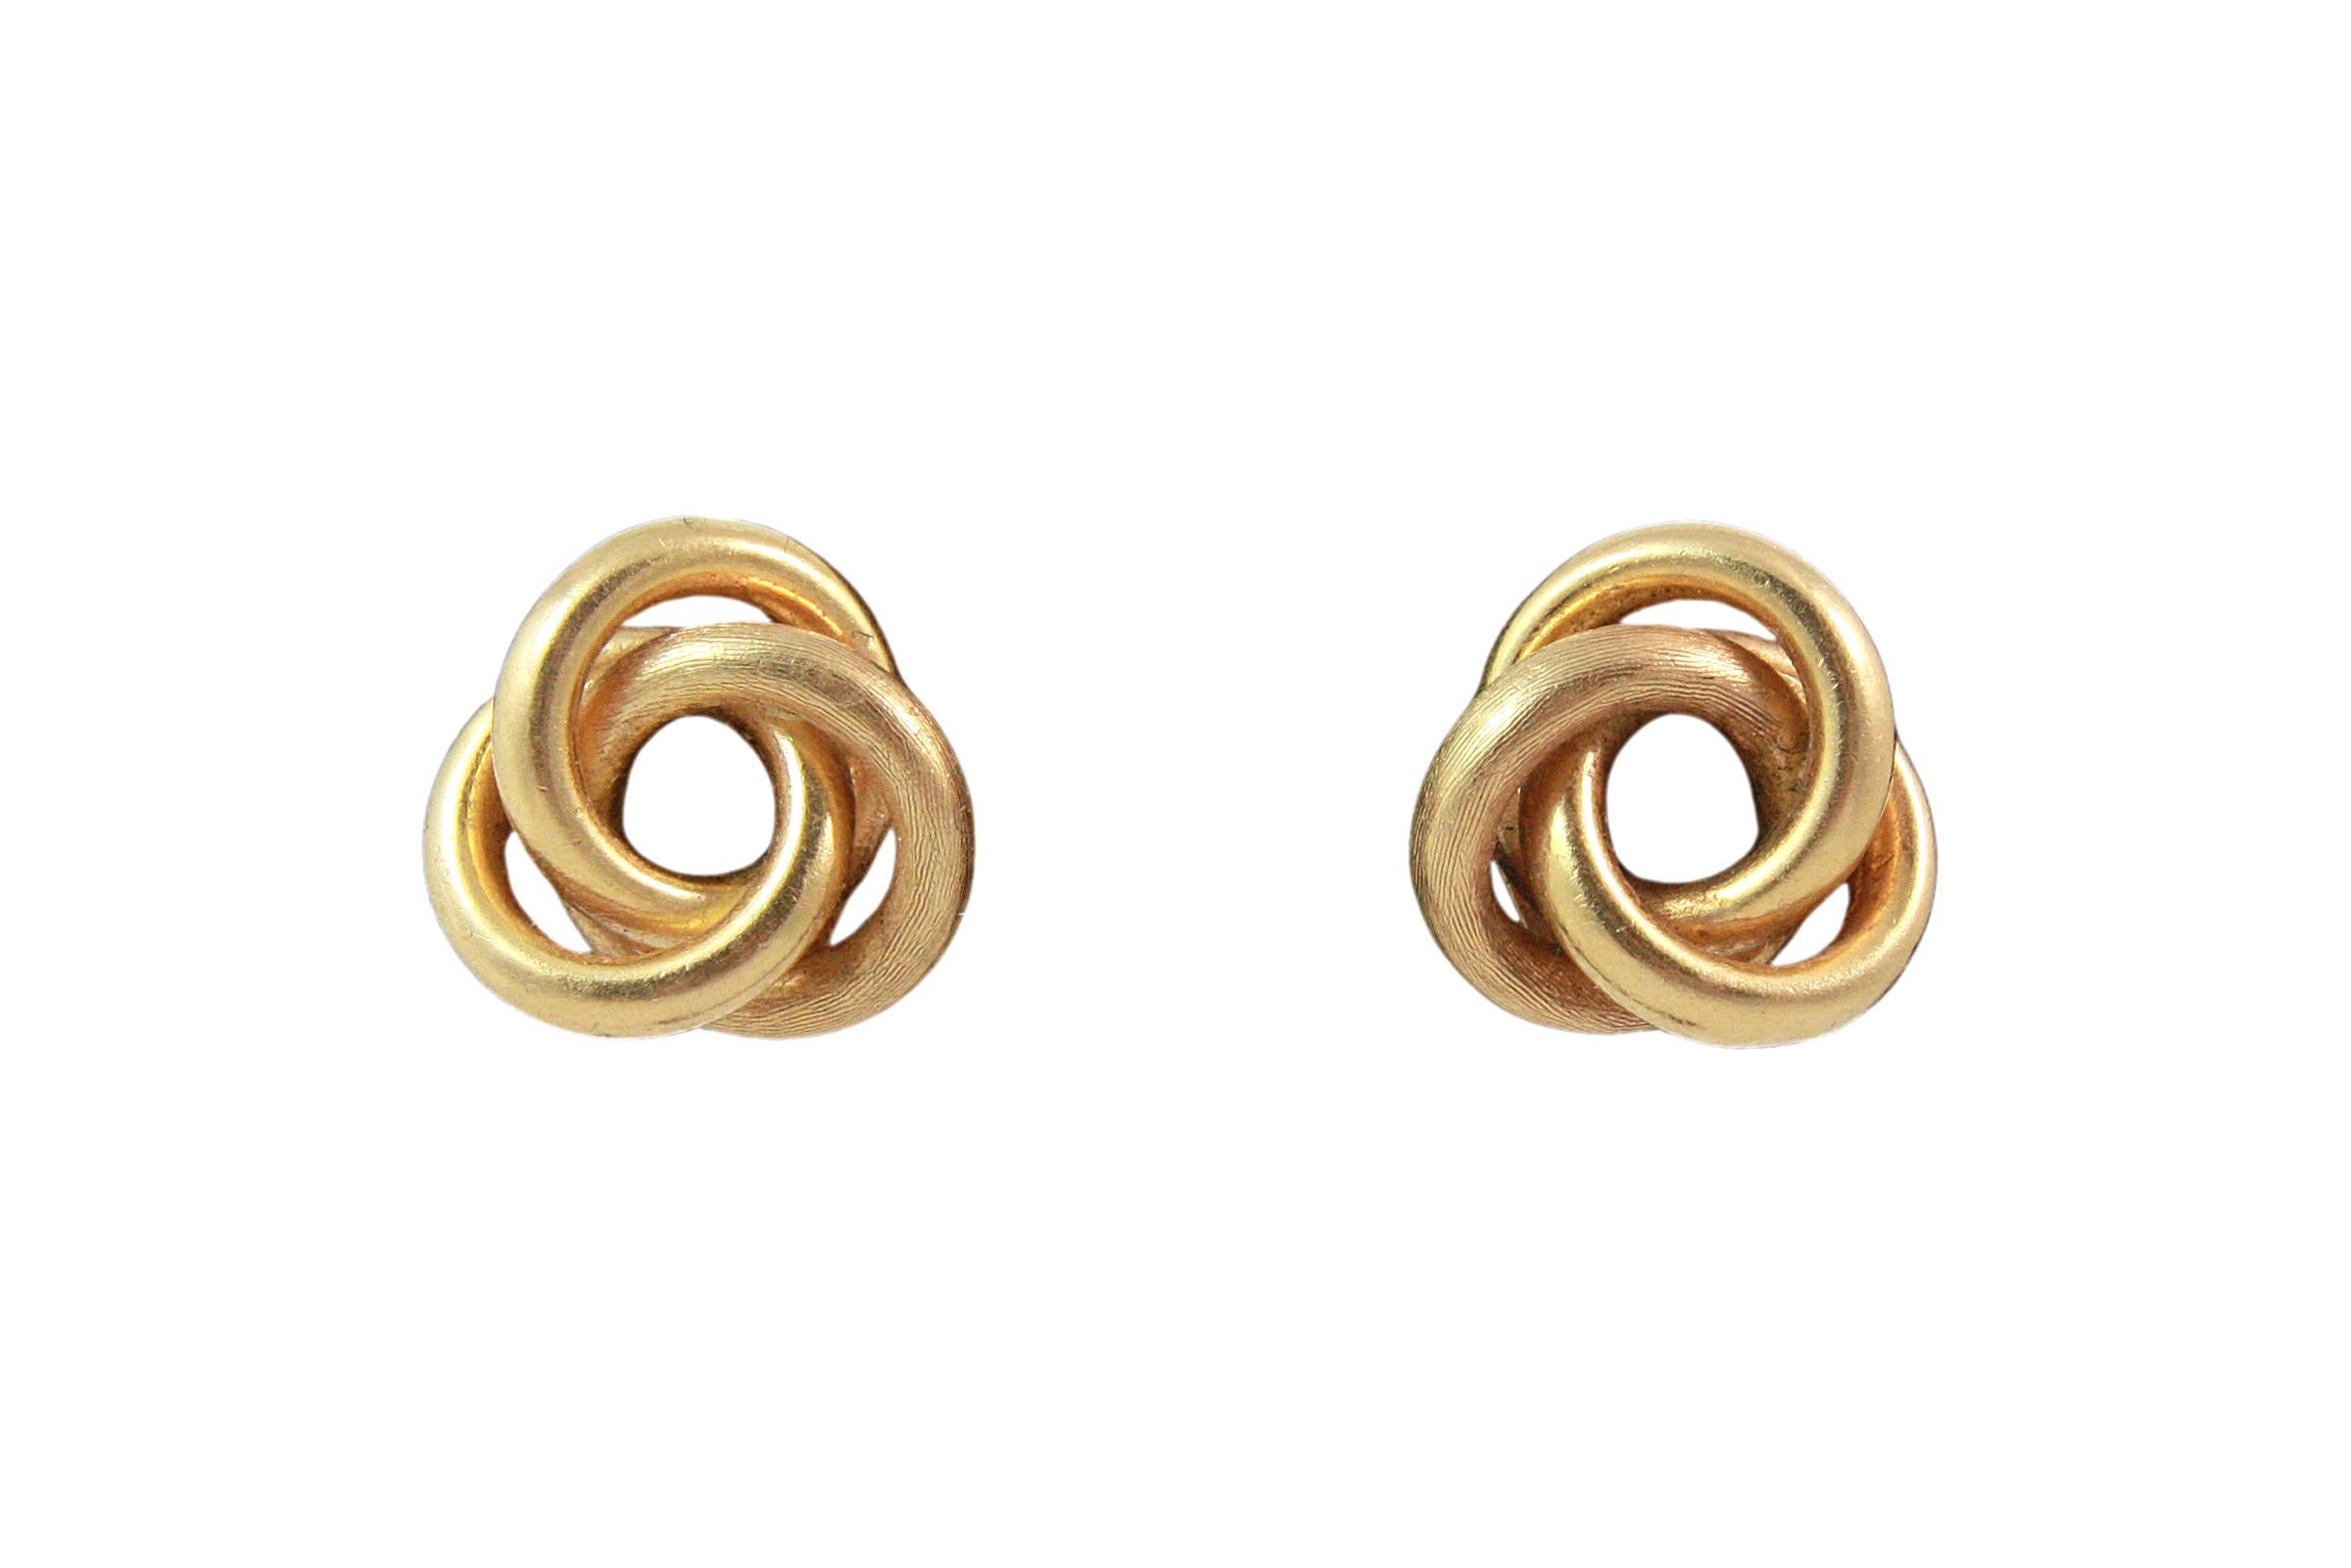 18K Gold Italian KNOT Earrings
14K Gold earring backings
Italian
Unknown designer
